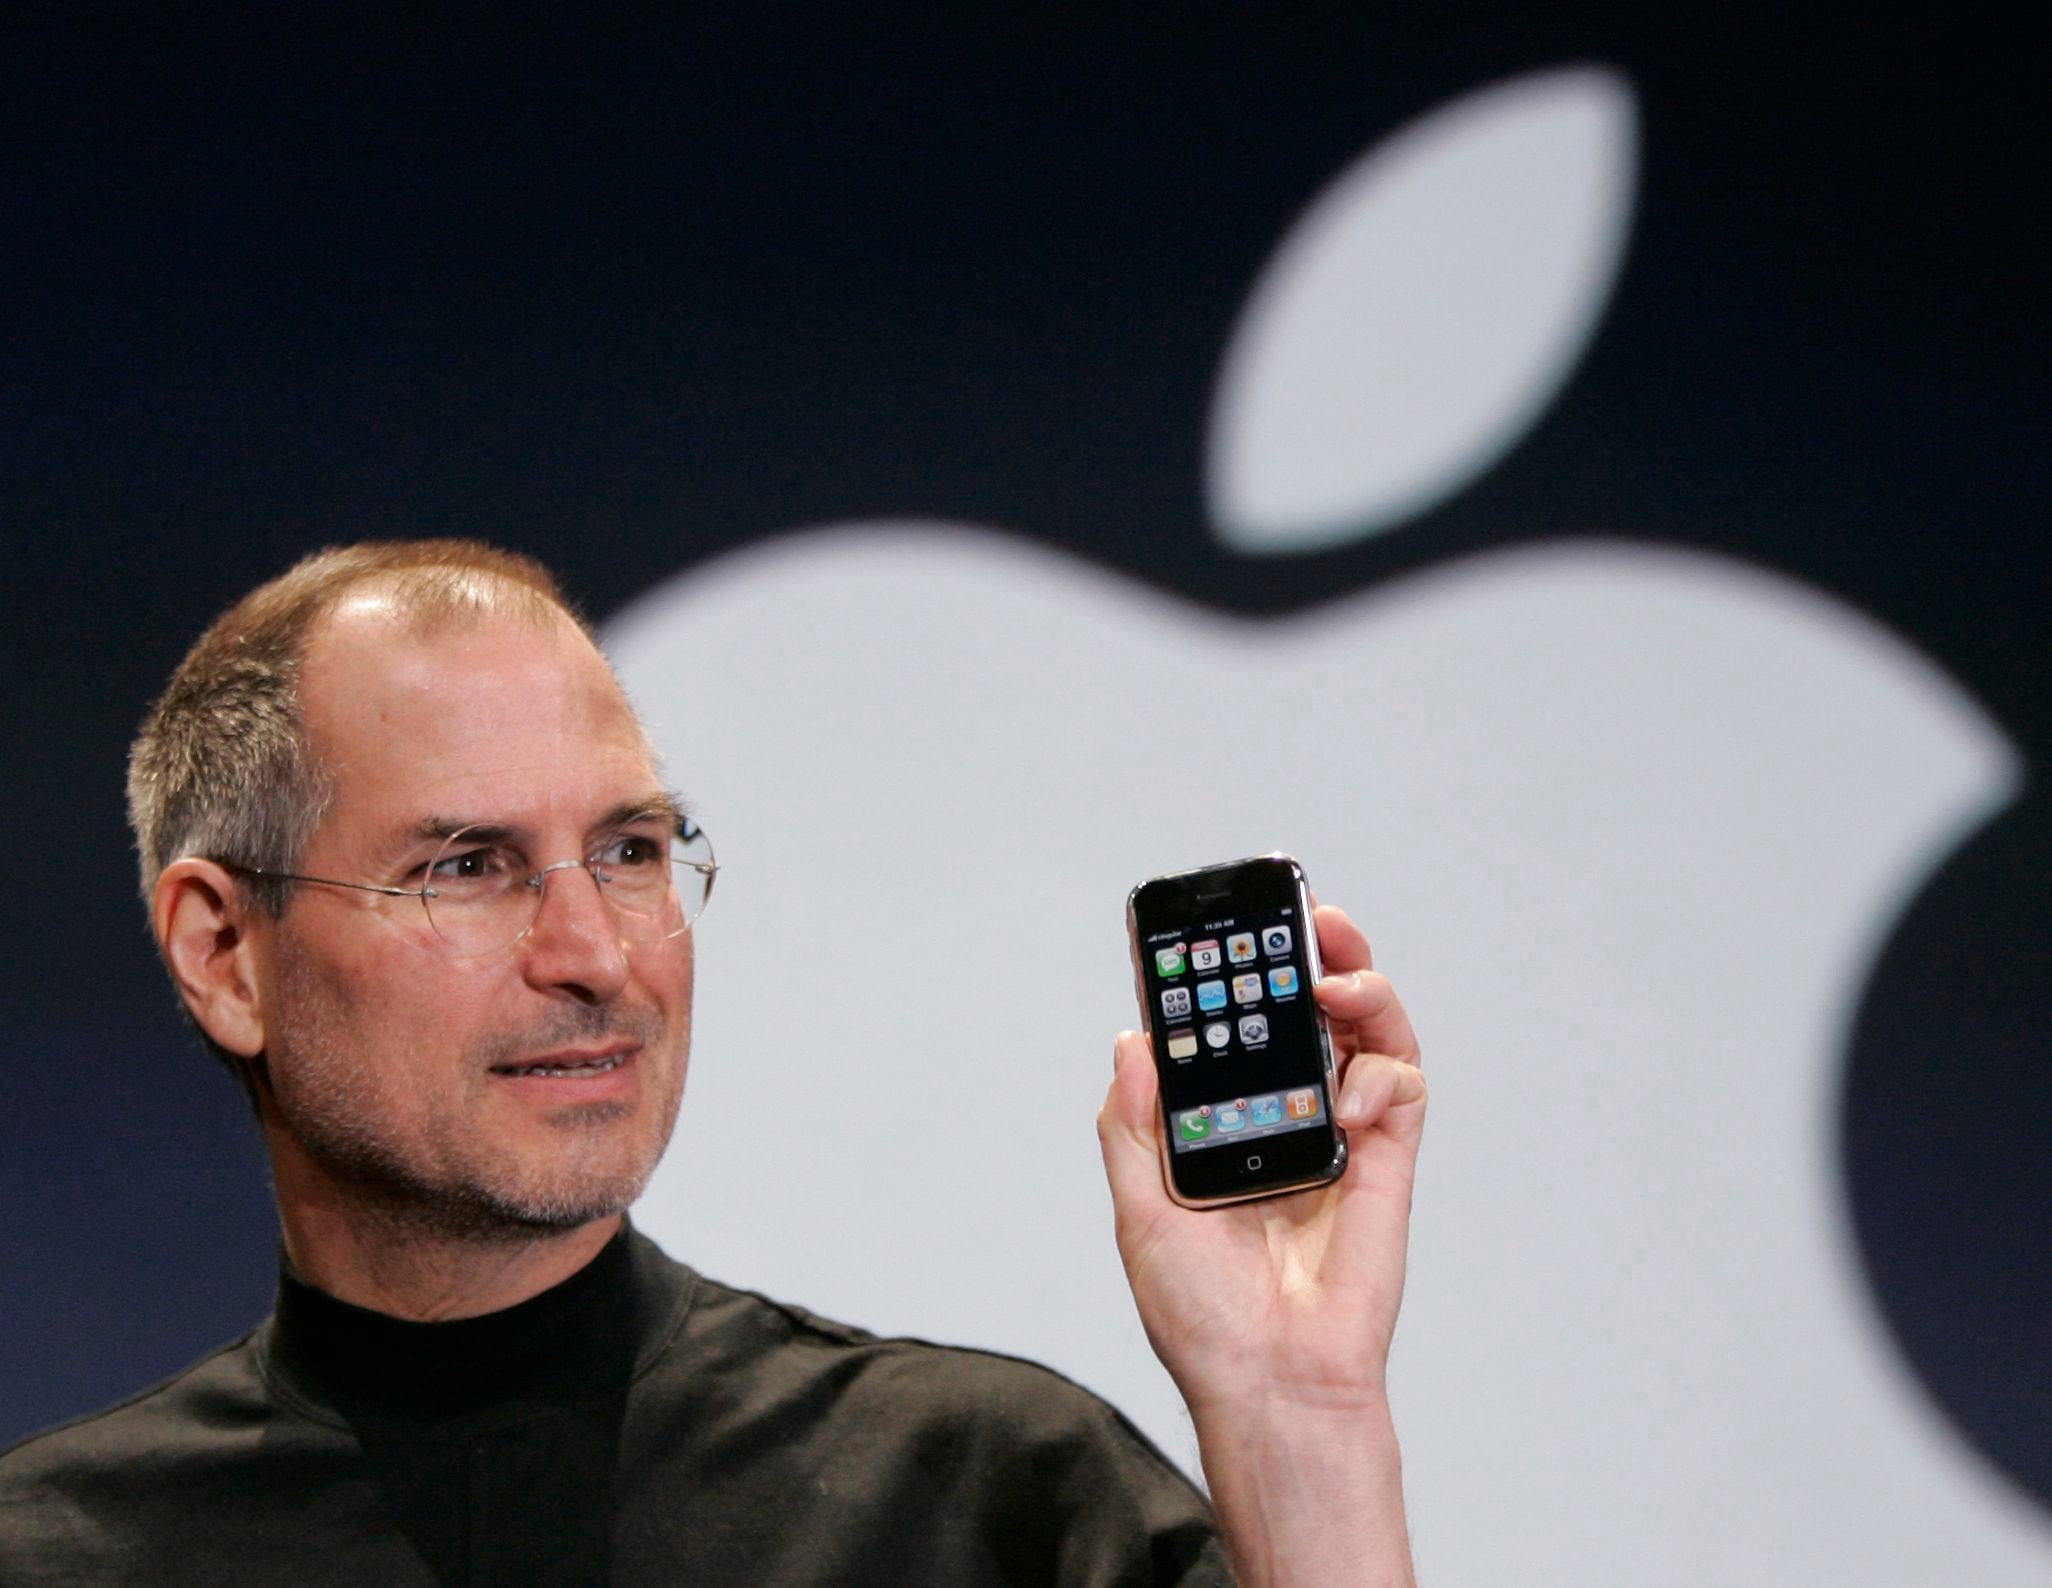 Steve Jobs creía que las reuniones debían durar la menor cantidad de tiempo posible y hablarse pocos temas. (AP Foto/Paul Sakuma, Archivo)